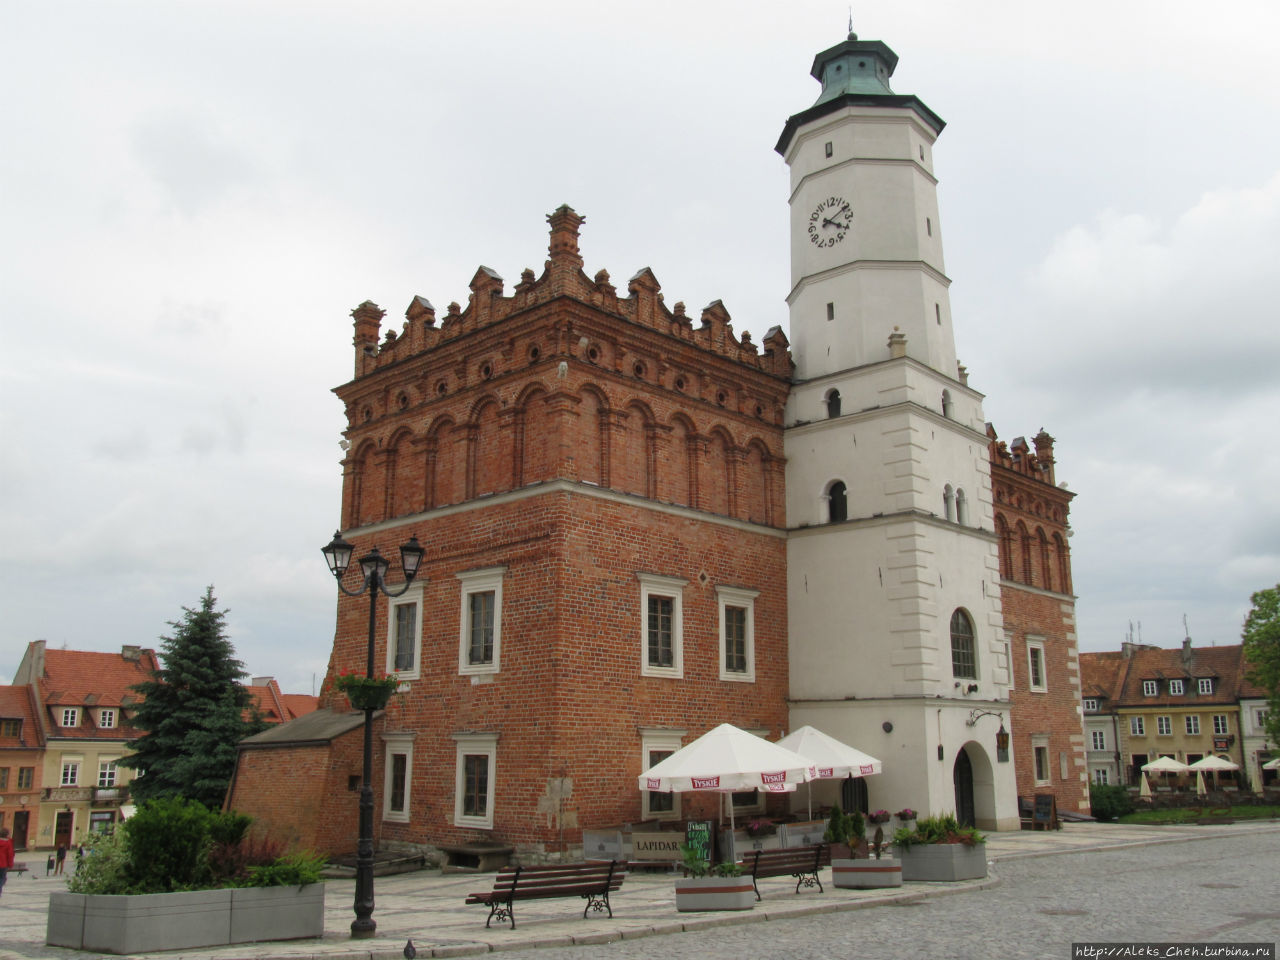 Ратуша Сандомир, Польша